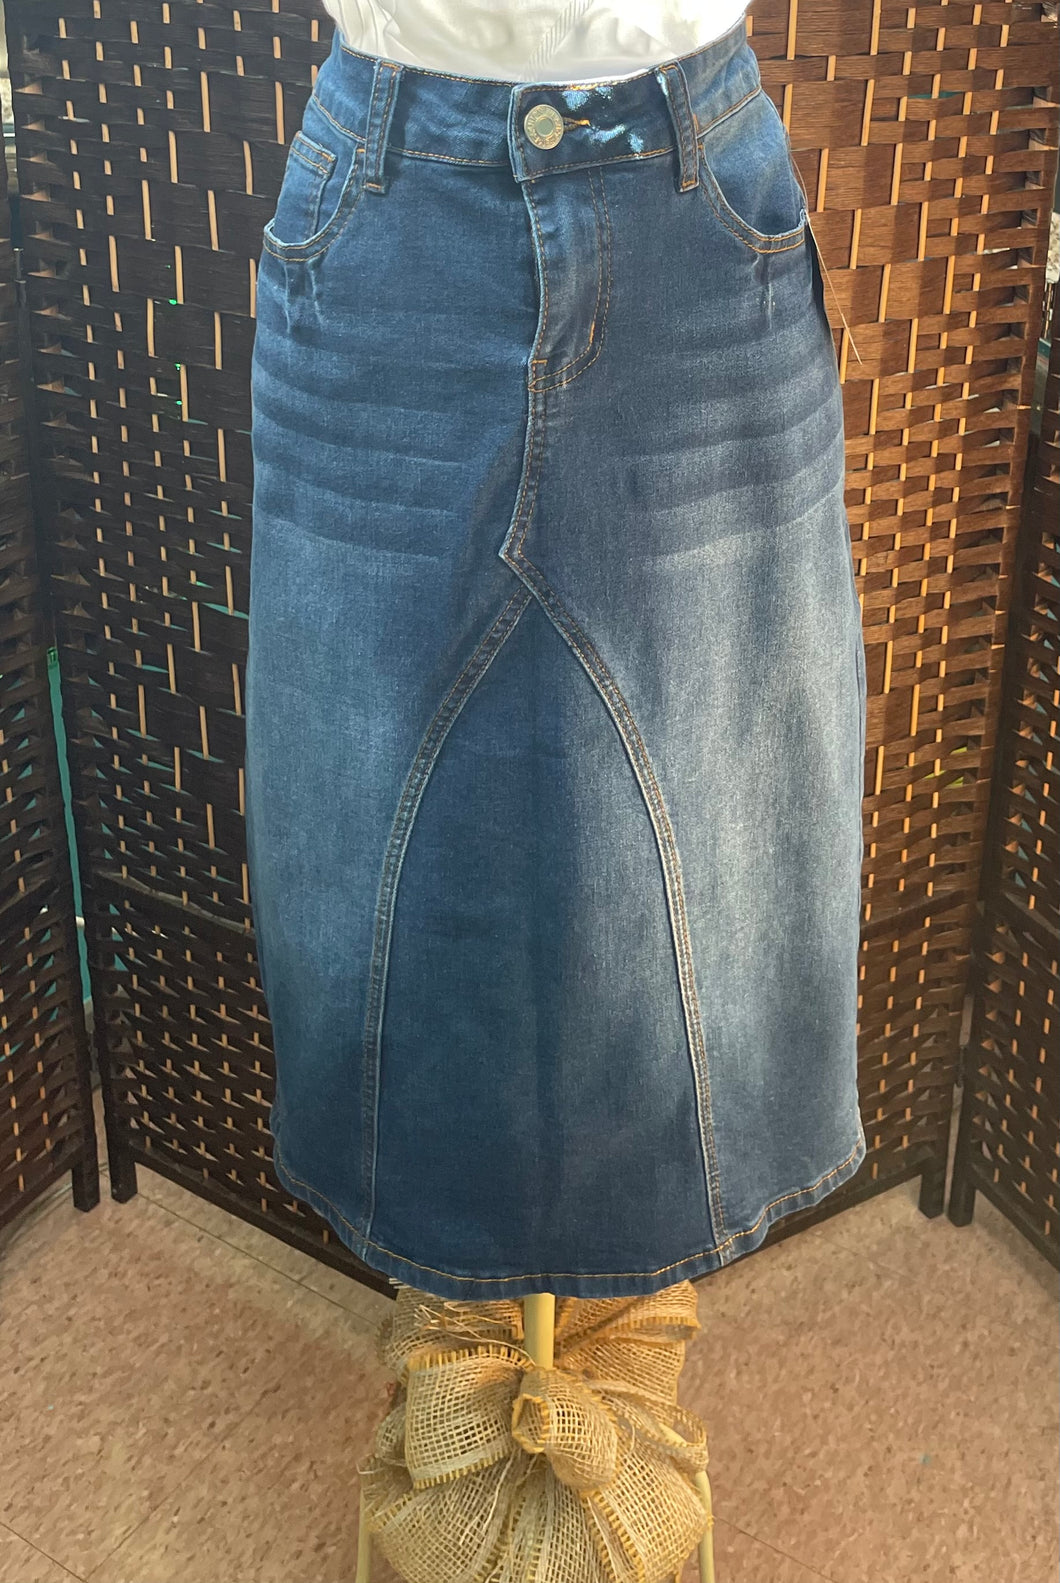 Denim Pieced Front Jean Skirt